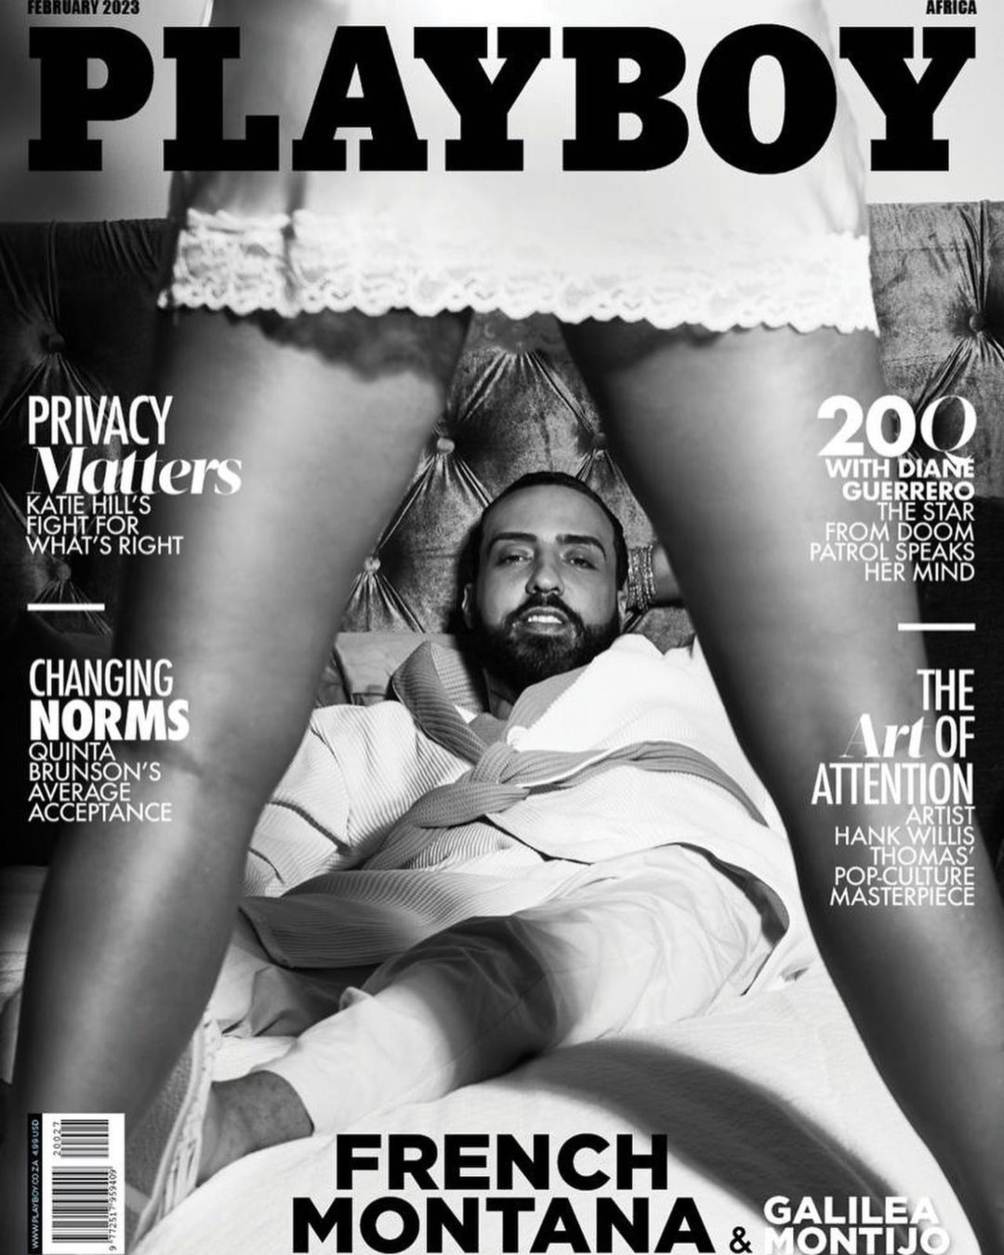 Galilea Montijo, en sensual portada de revista Playboy; así presume fotos